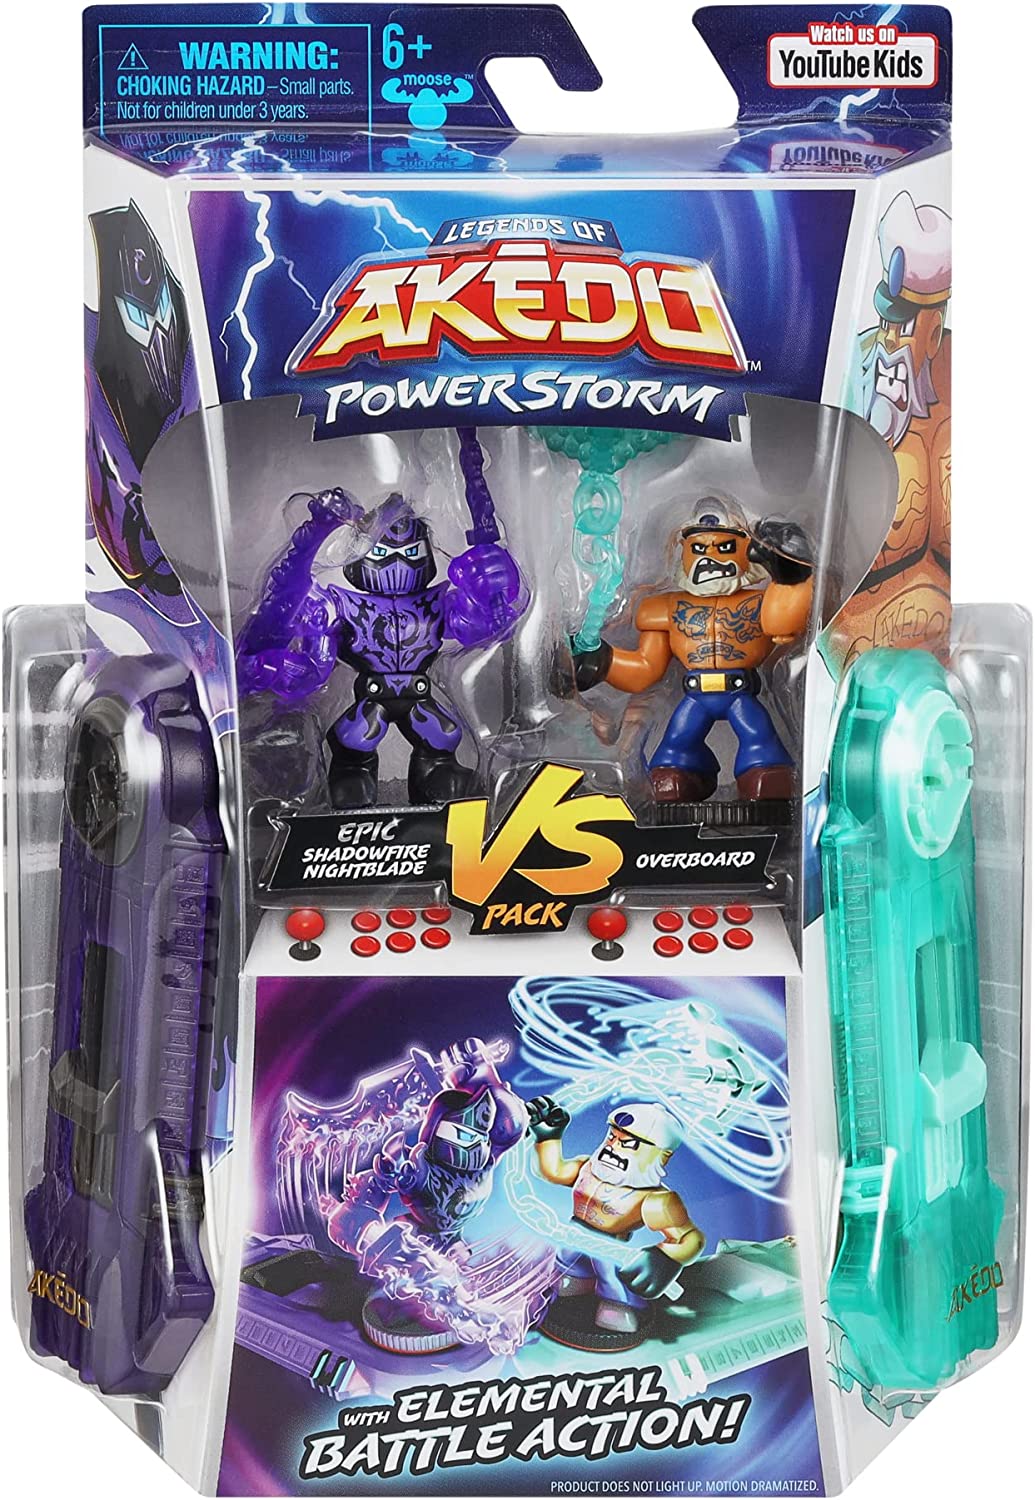 Legends of Akedo: Powerstorm Versus Pack – Epische Shadowfire Nightblade Vs Overboard Warrior-Figuren